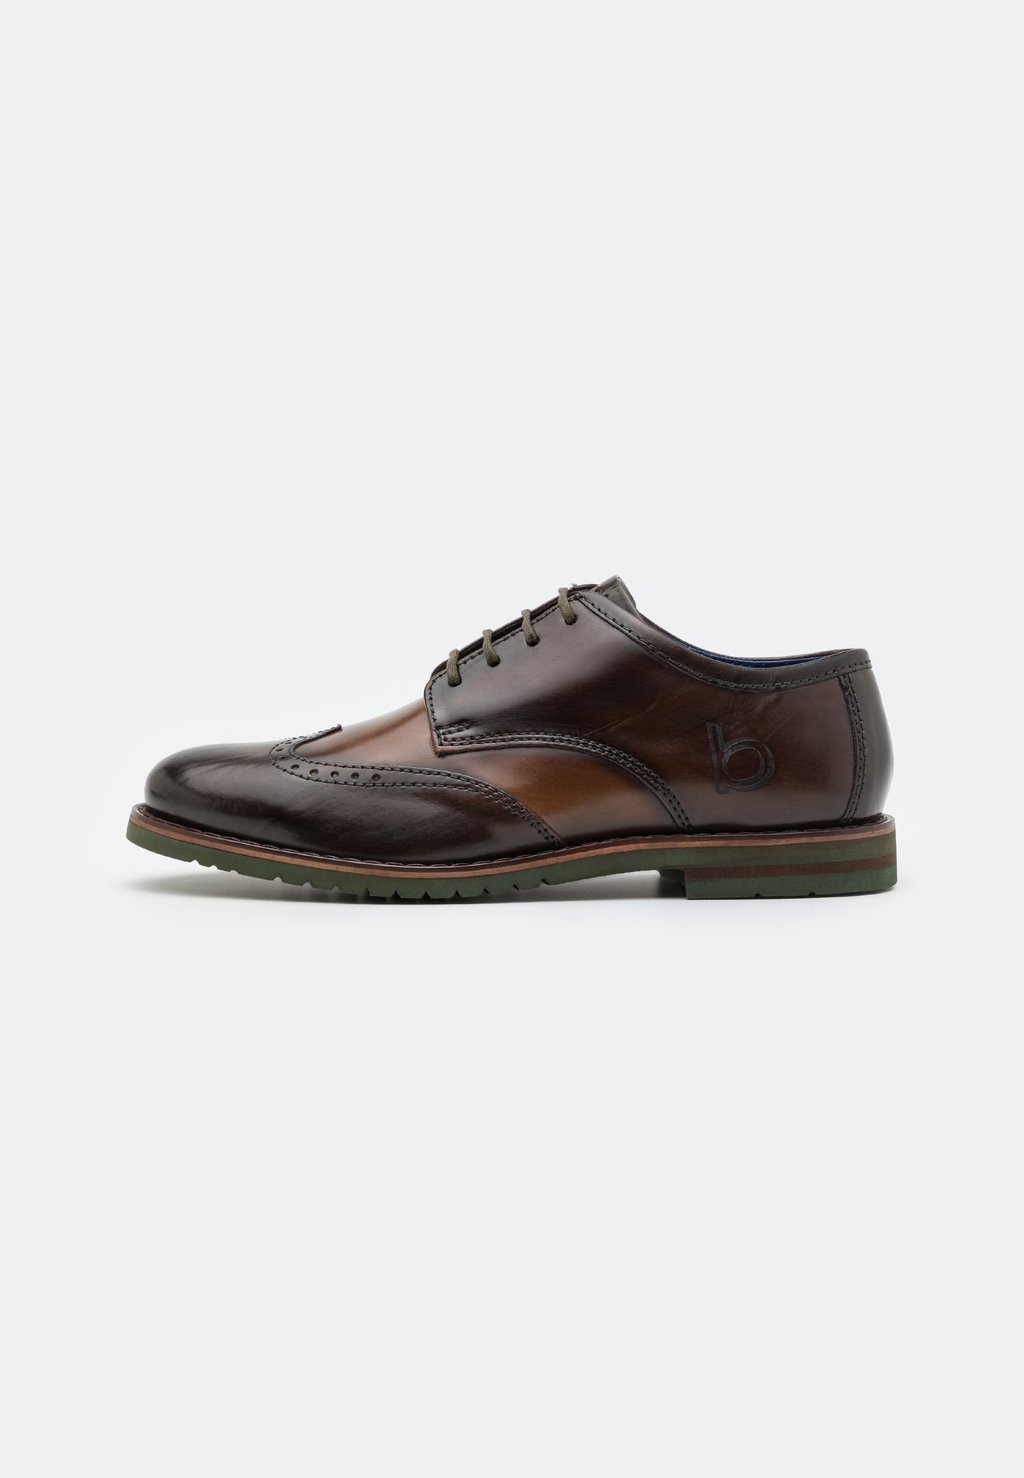 Деловые туфли на шнуровке CALEO EXKO bugatti, цвет brown/taupe